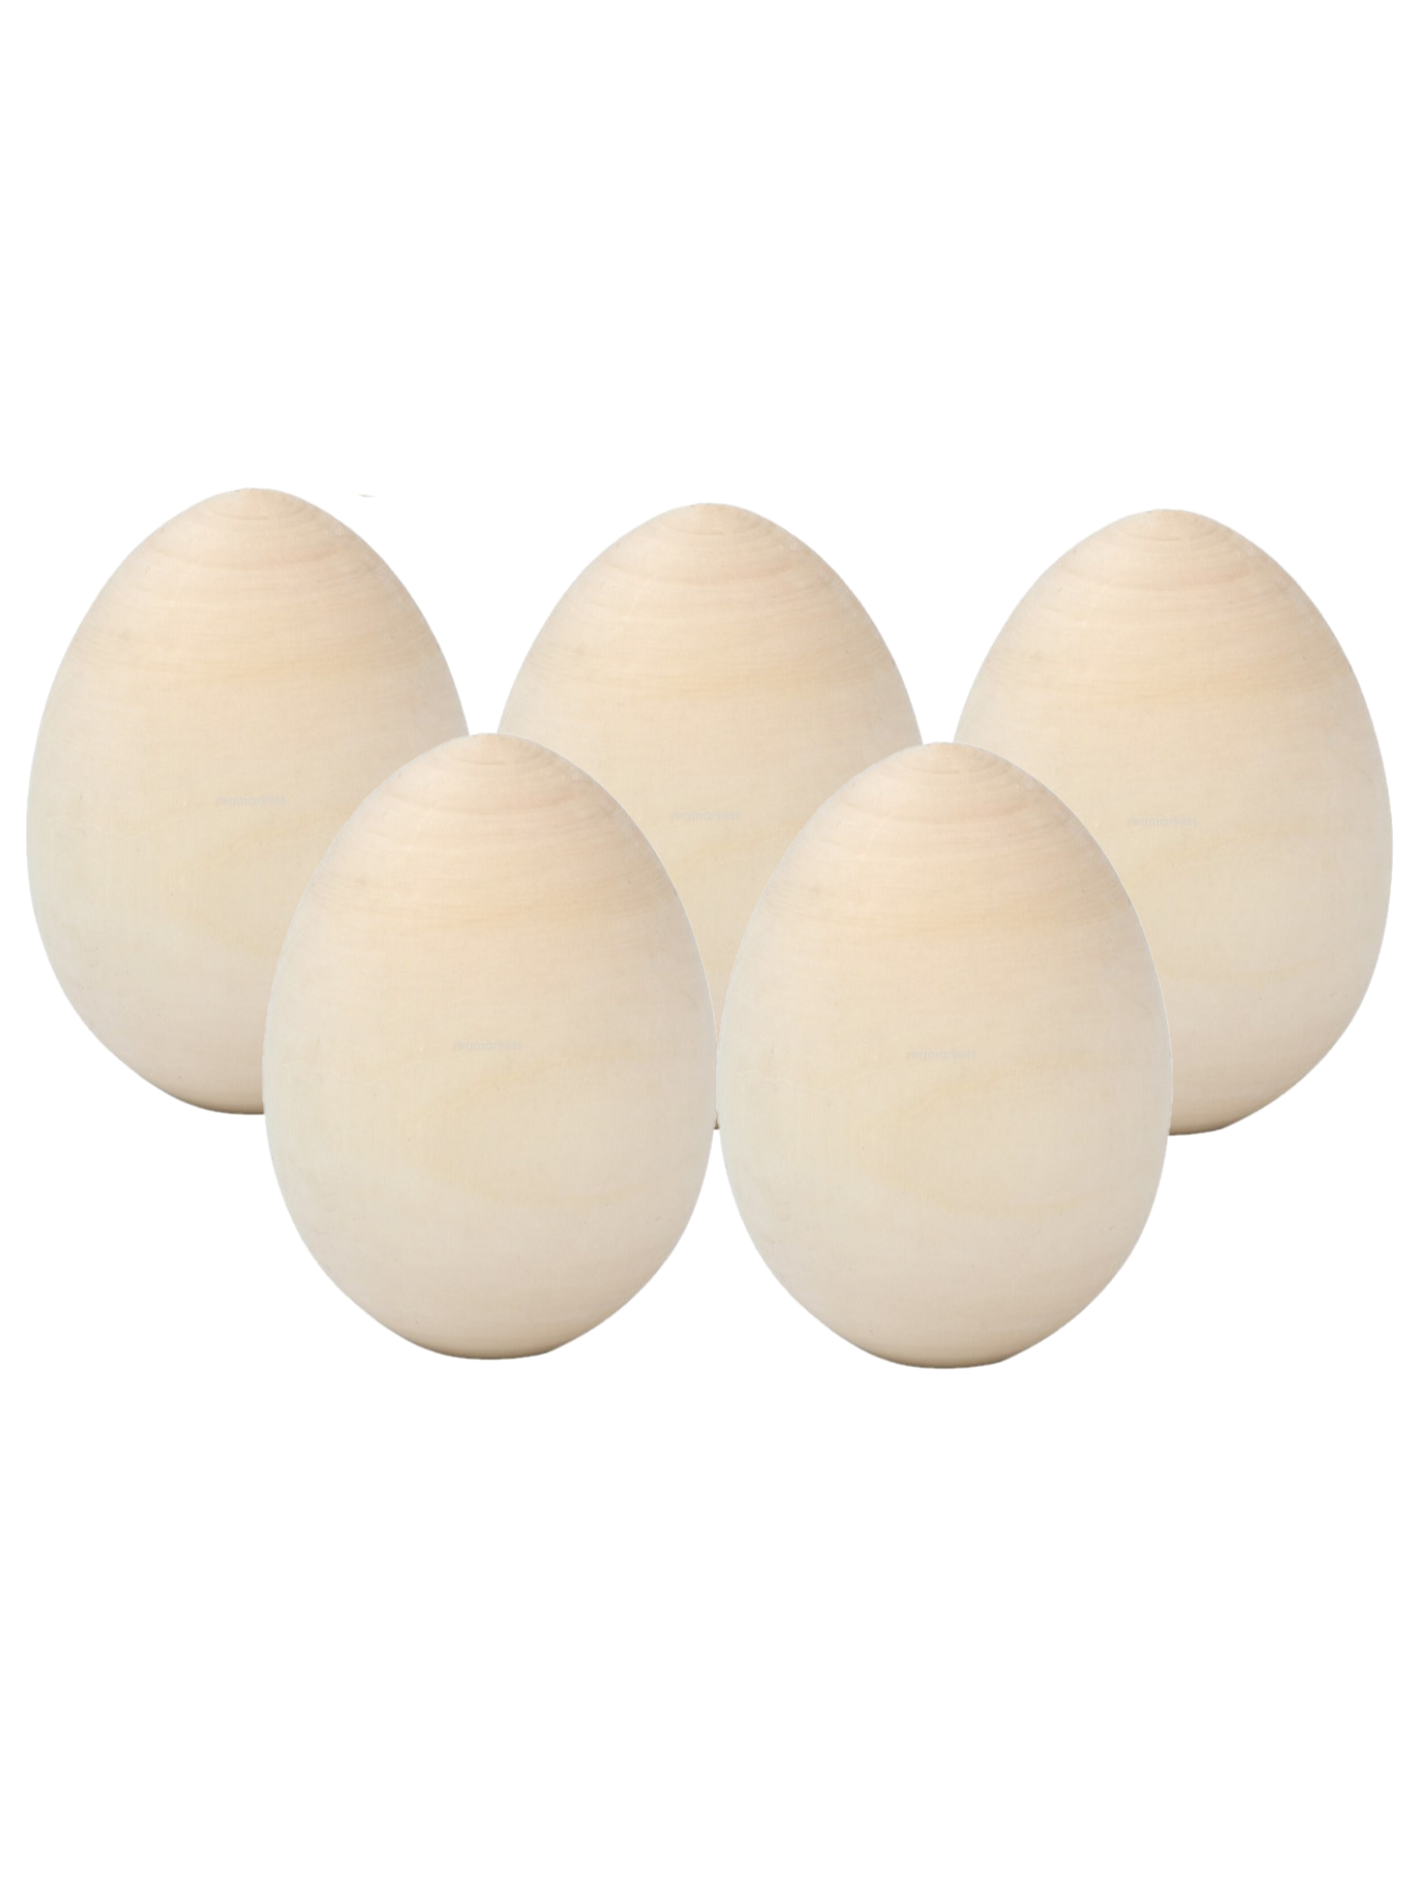 Яйца пасхальные деревянные Тебе Игрушка заготовки для росписи 5 шт